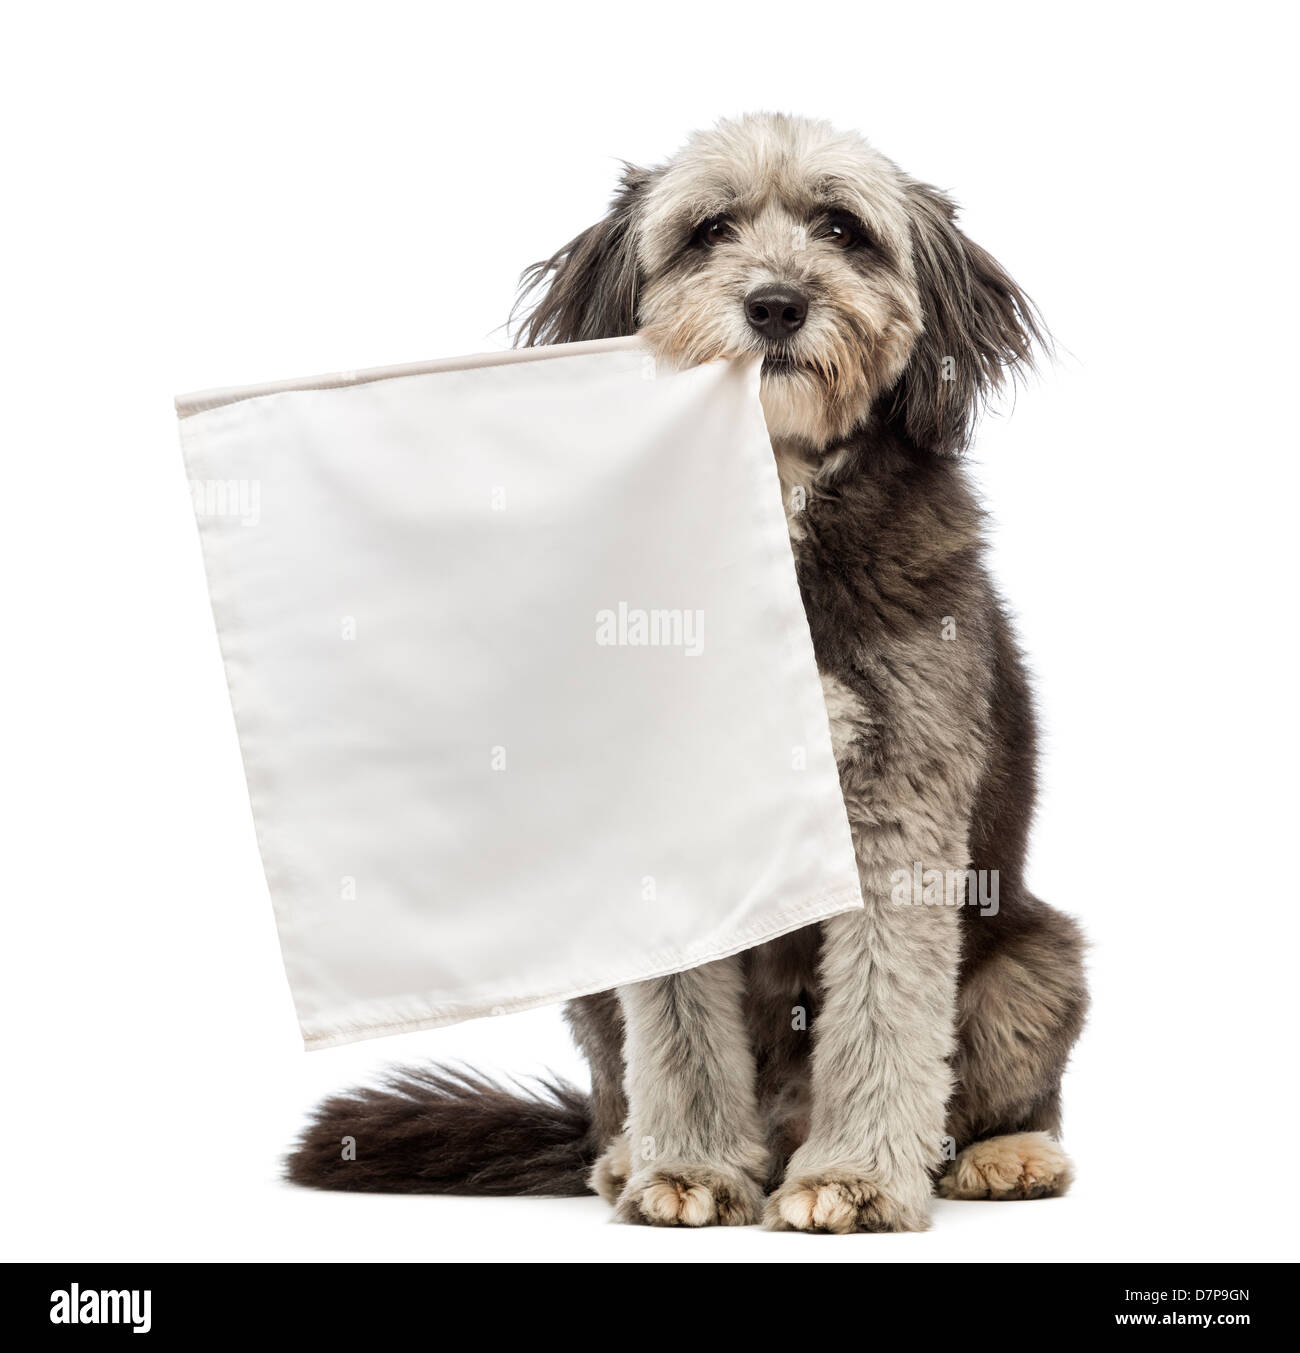 Kreuzen Sie Hund, 4 Jahre alt, hält weiße Fahne vor weißem Hintergrund Stockfoto